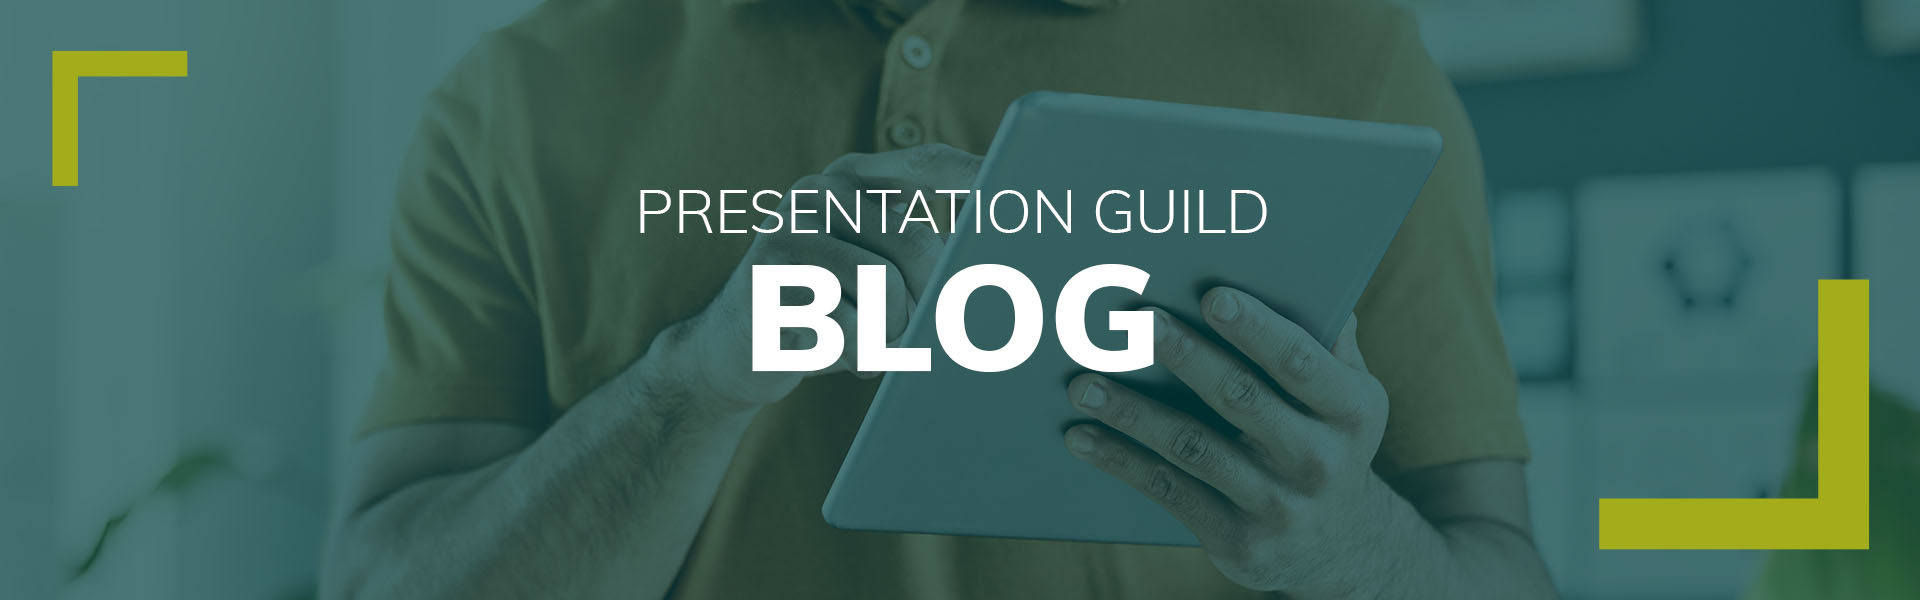 Presentation Guild Blog